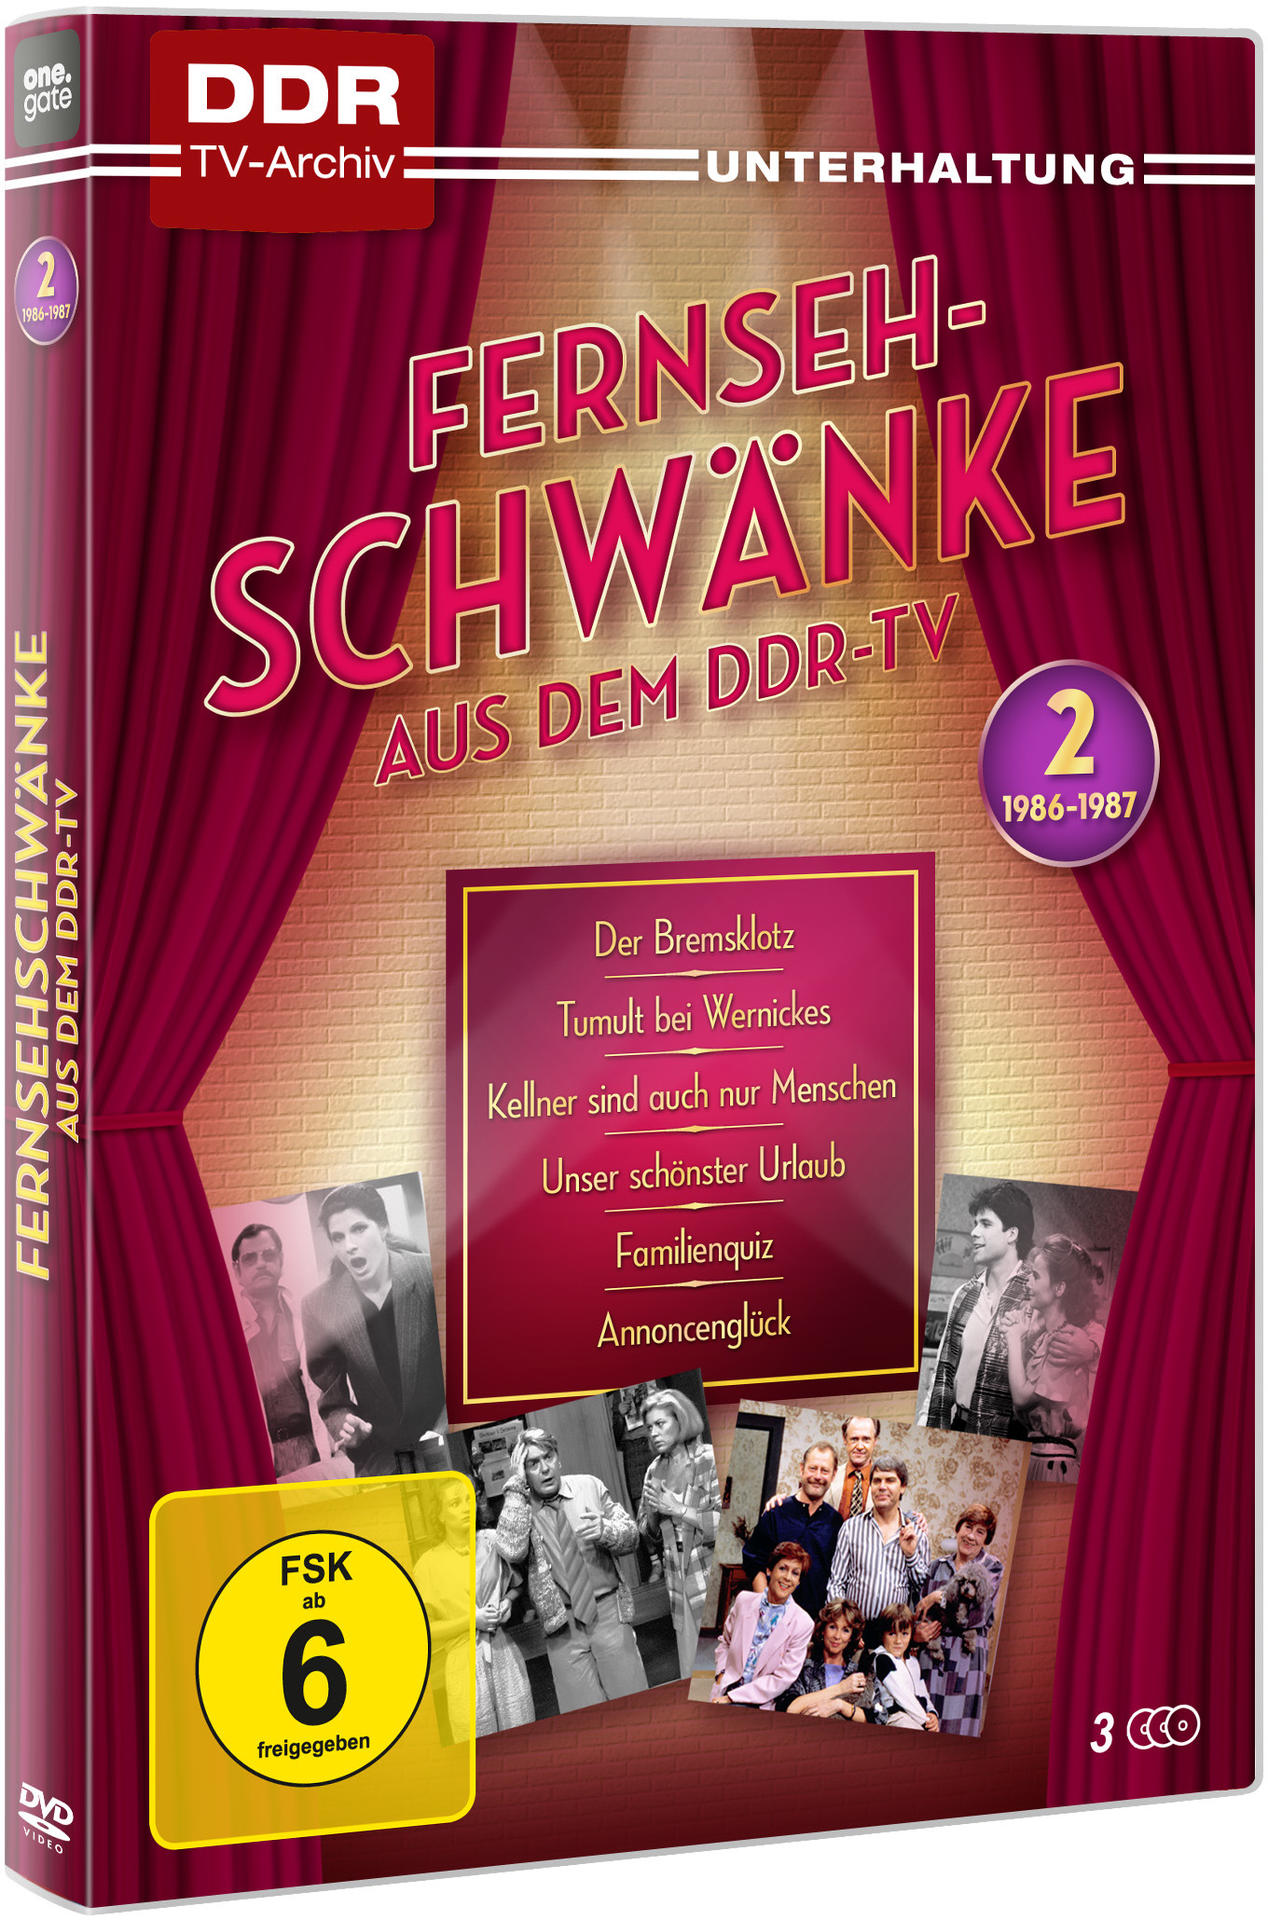 1986-87 Fernsehschwänke DVD dem Box - aus DDR-TV 2 -